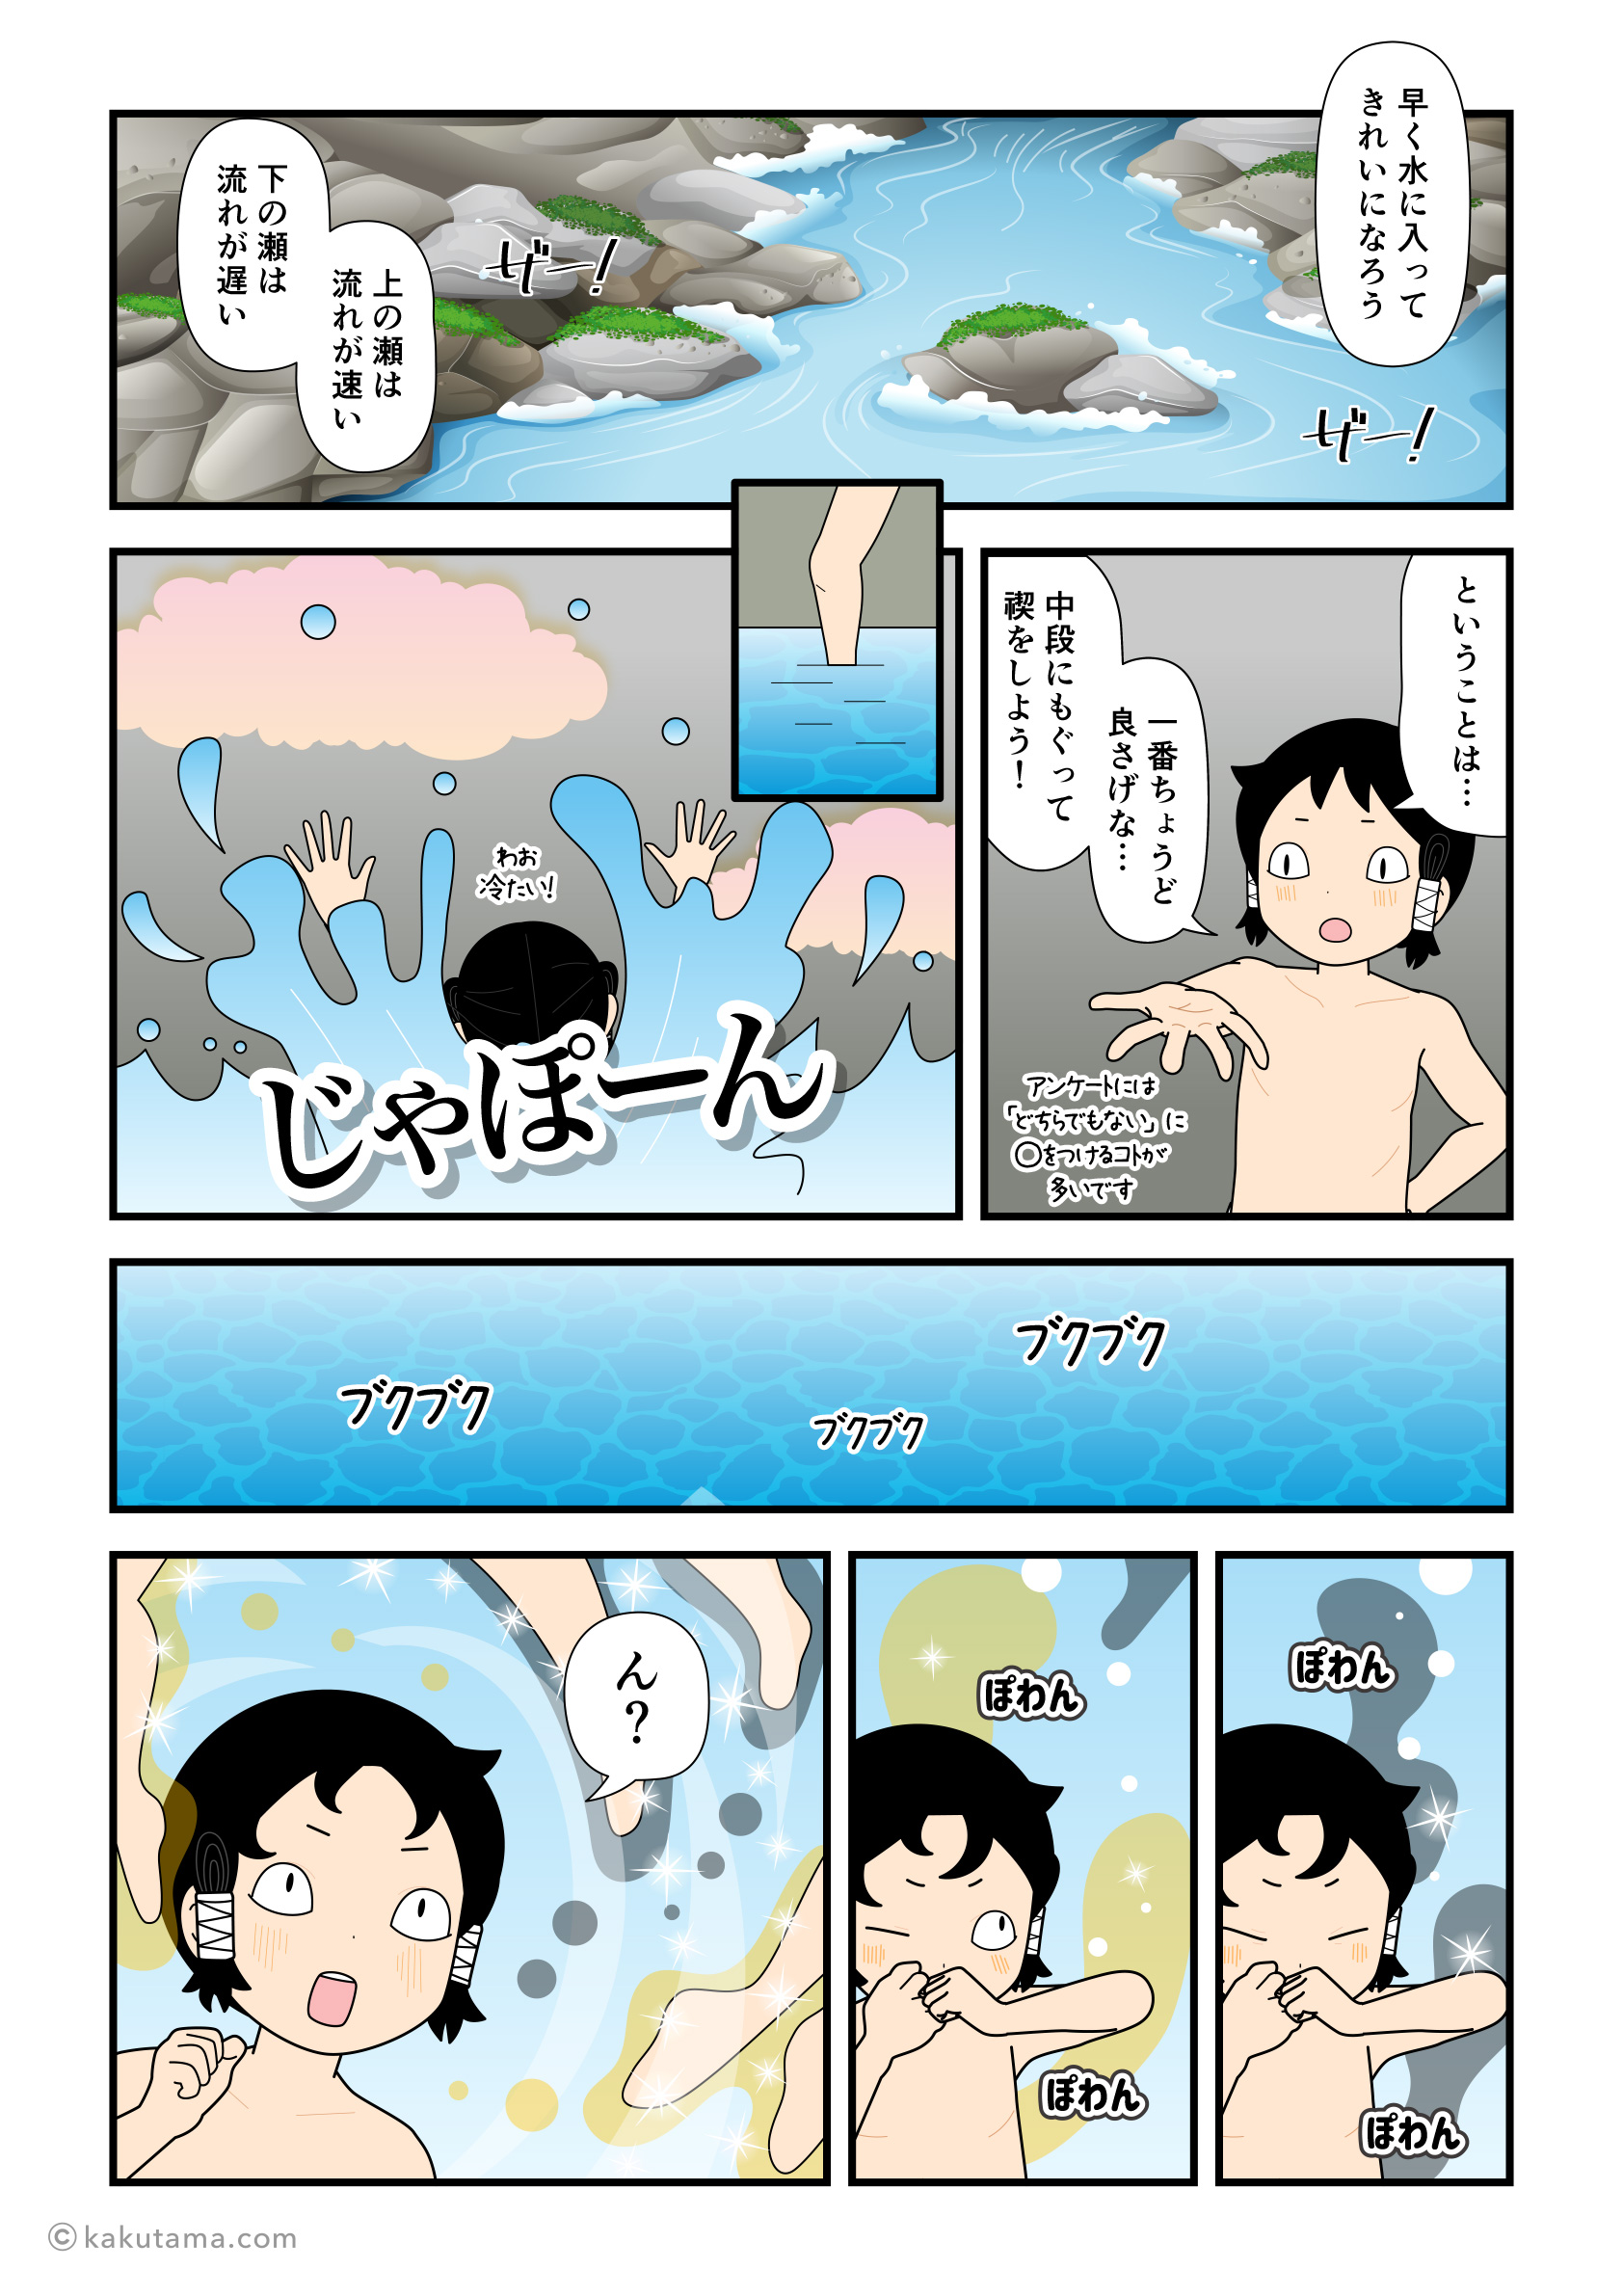 水の流れを見て中段に潜ったイザナギから神が生まれてきた漫画